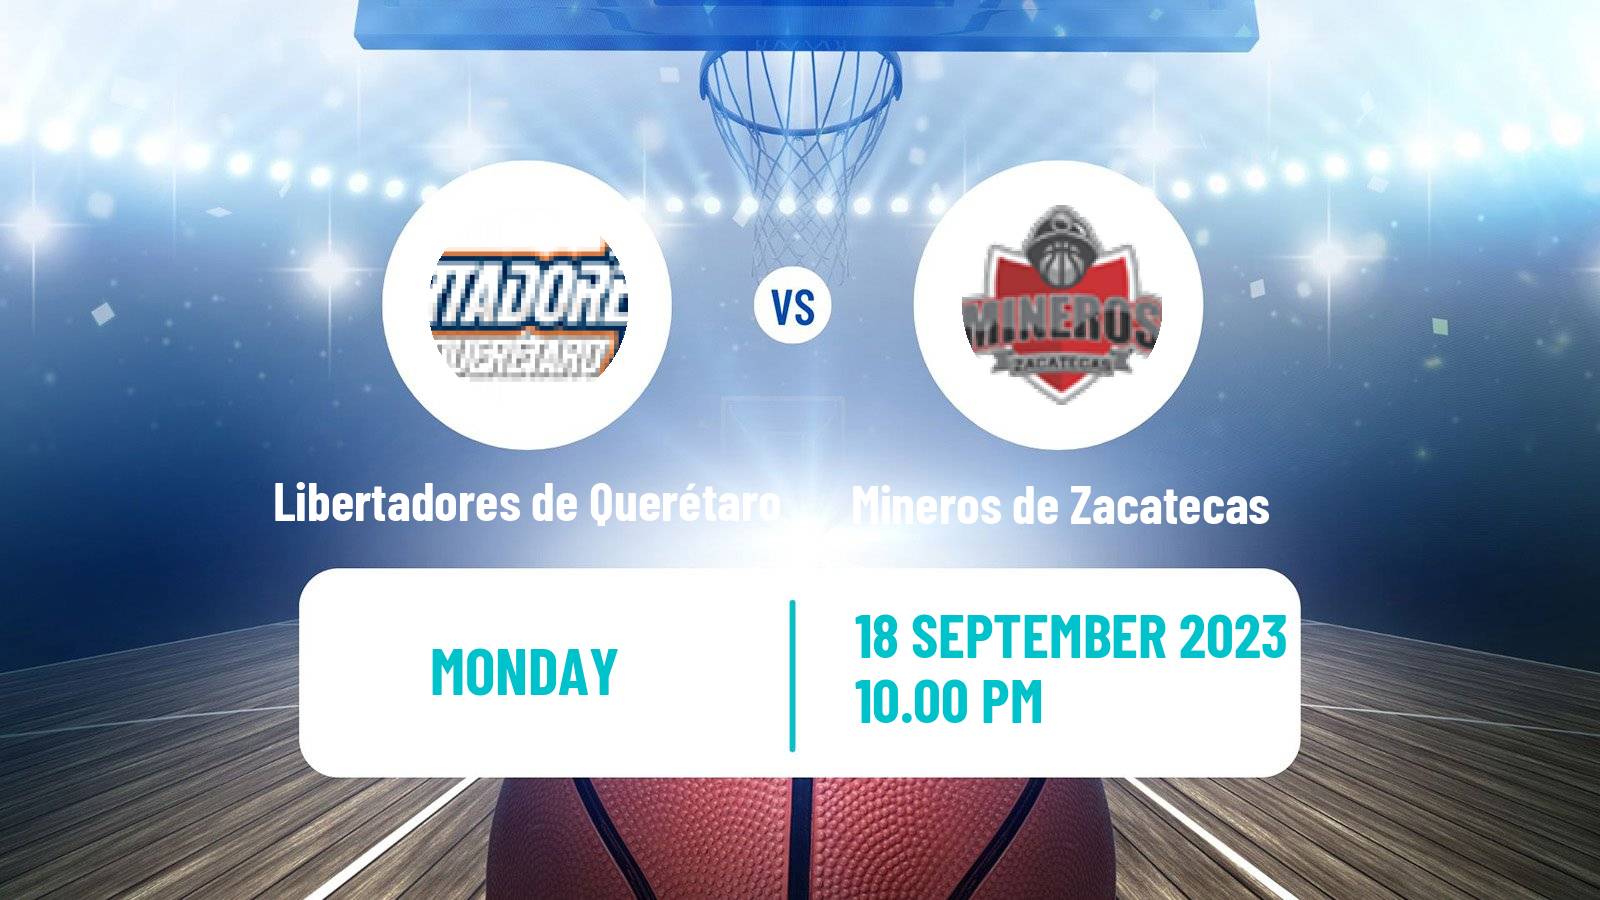 Basketball Mexican LNBP Libertadores de Querétaro - Mineros de Zacatecas